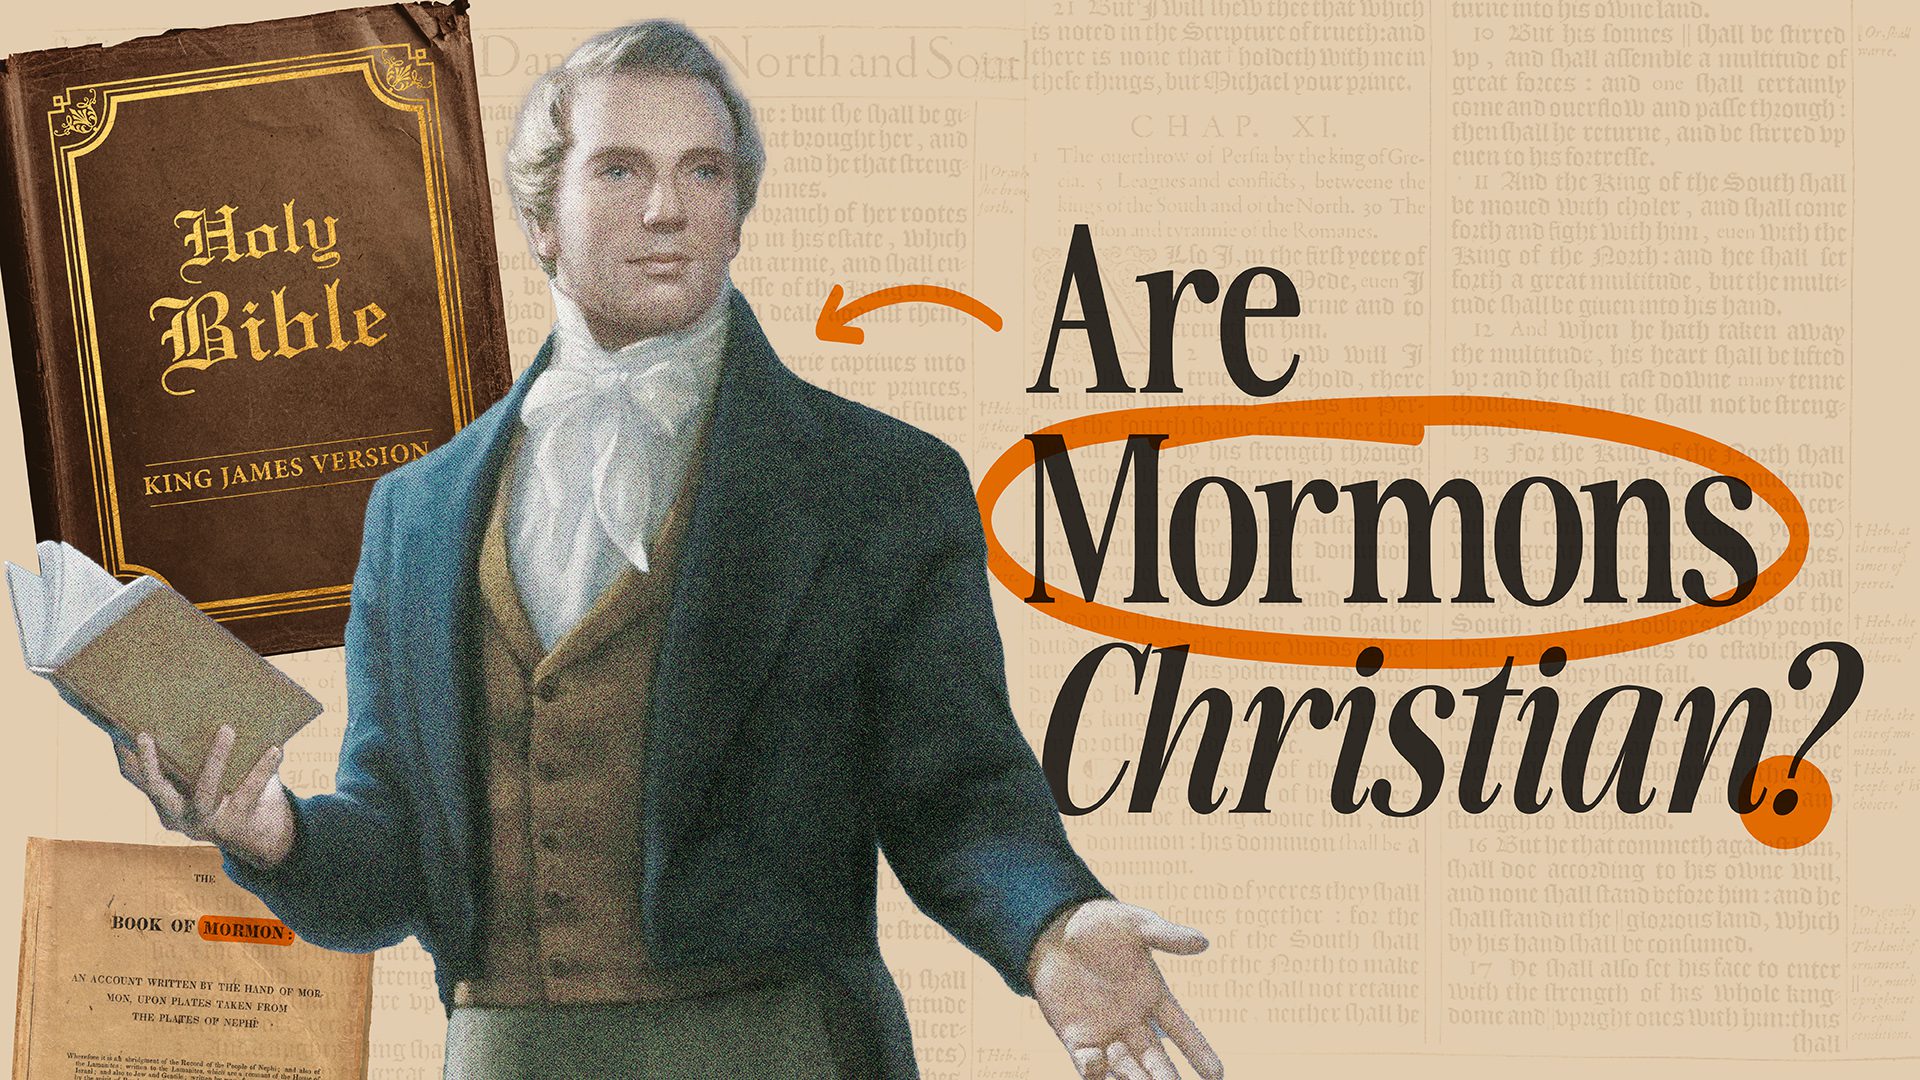 mormonism